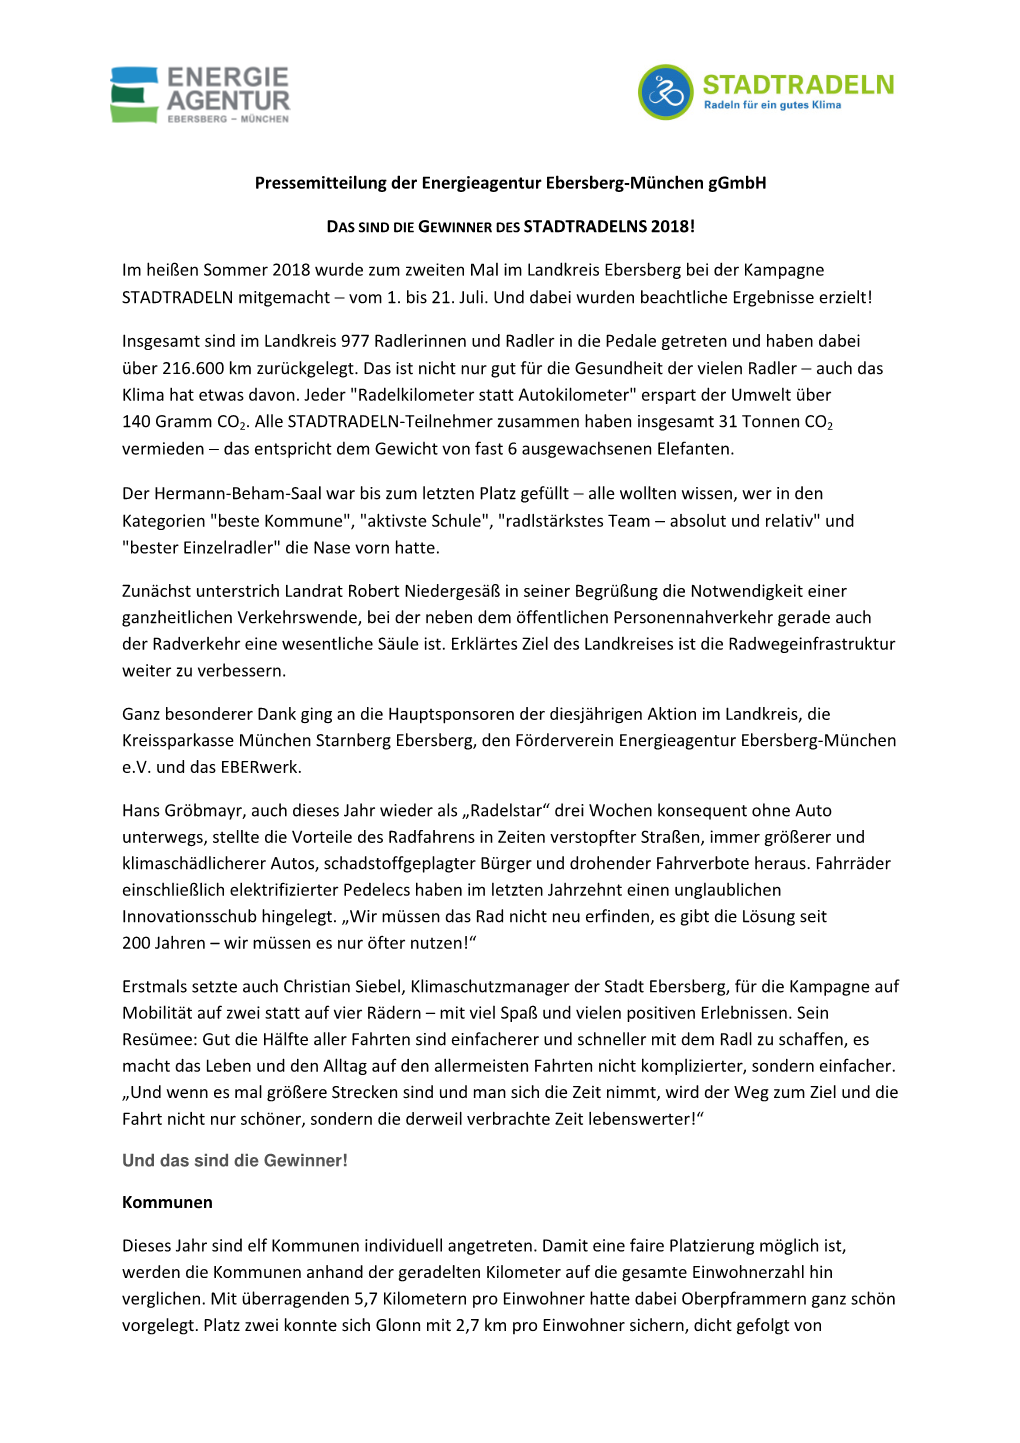 Pressemitteilung Der Energieagentur Ebersberg-München Ggmbh DAS